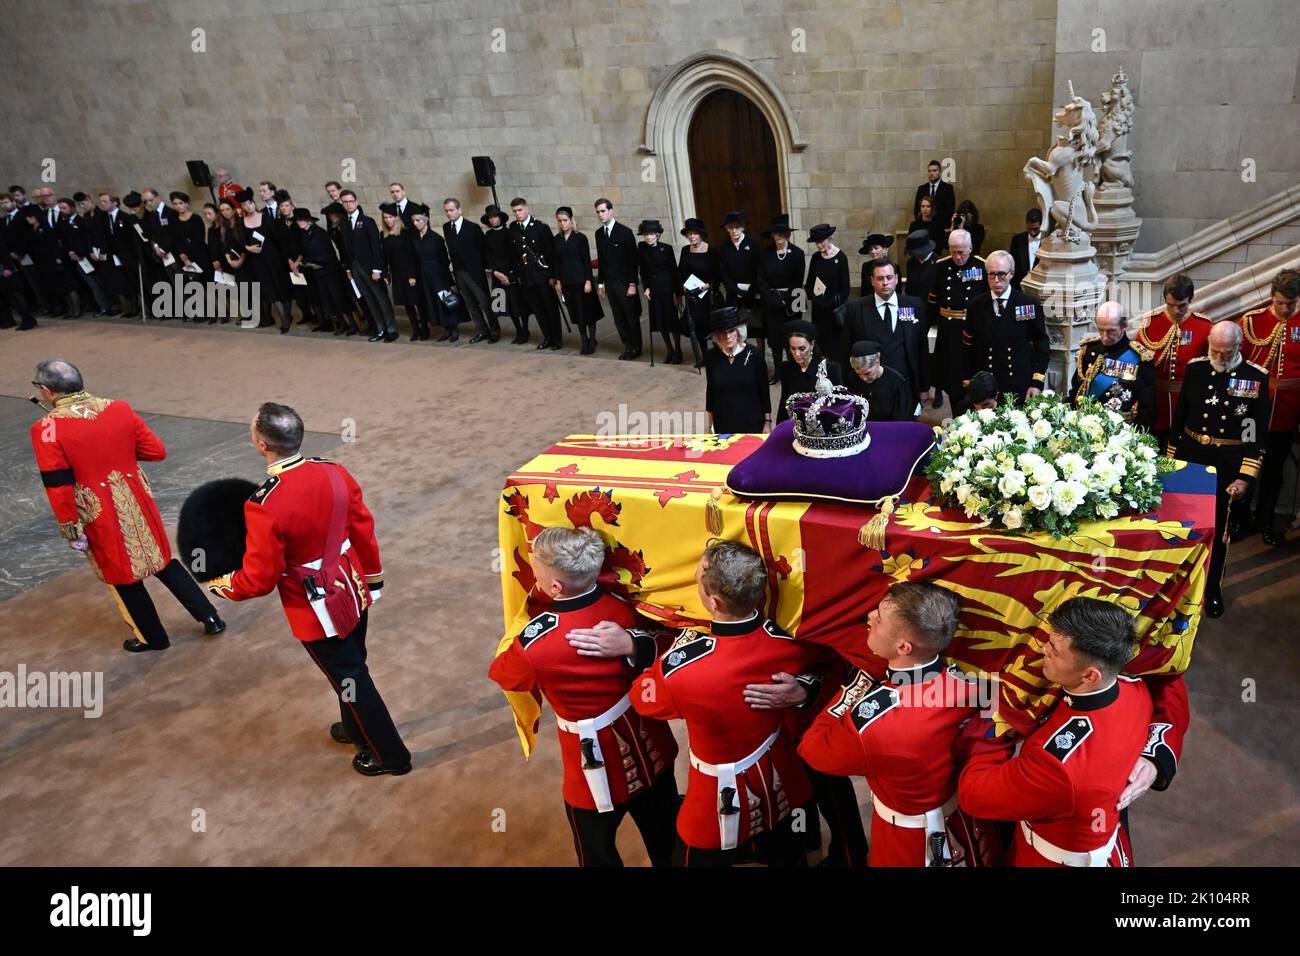 Die Trägerin trägt den Sarg von Königin Elizabeth II. In die Westminster Hall, London, wo er vor ihrer Beerdigung am Montag in einem Zustand liegen wird. Bilddatum: Mittwoch, 14. September 2022. Stockfoto